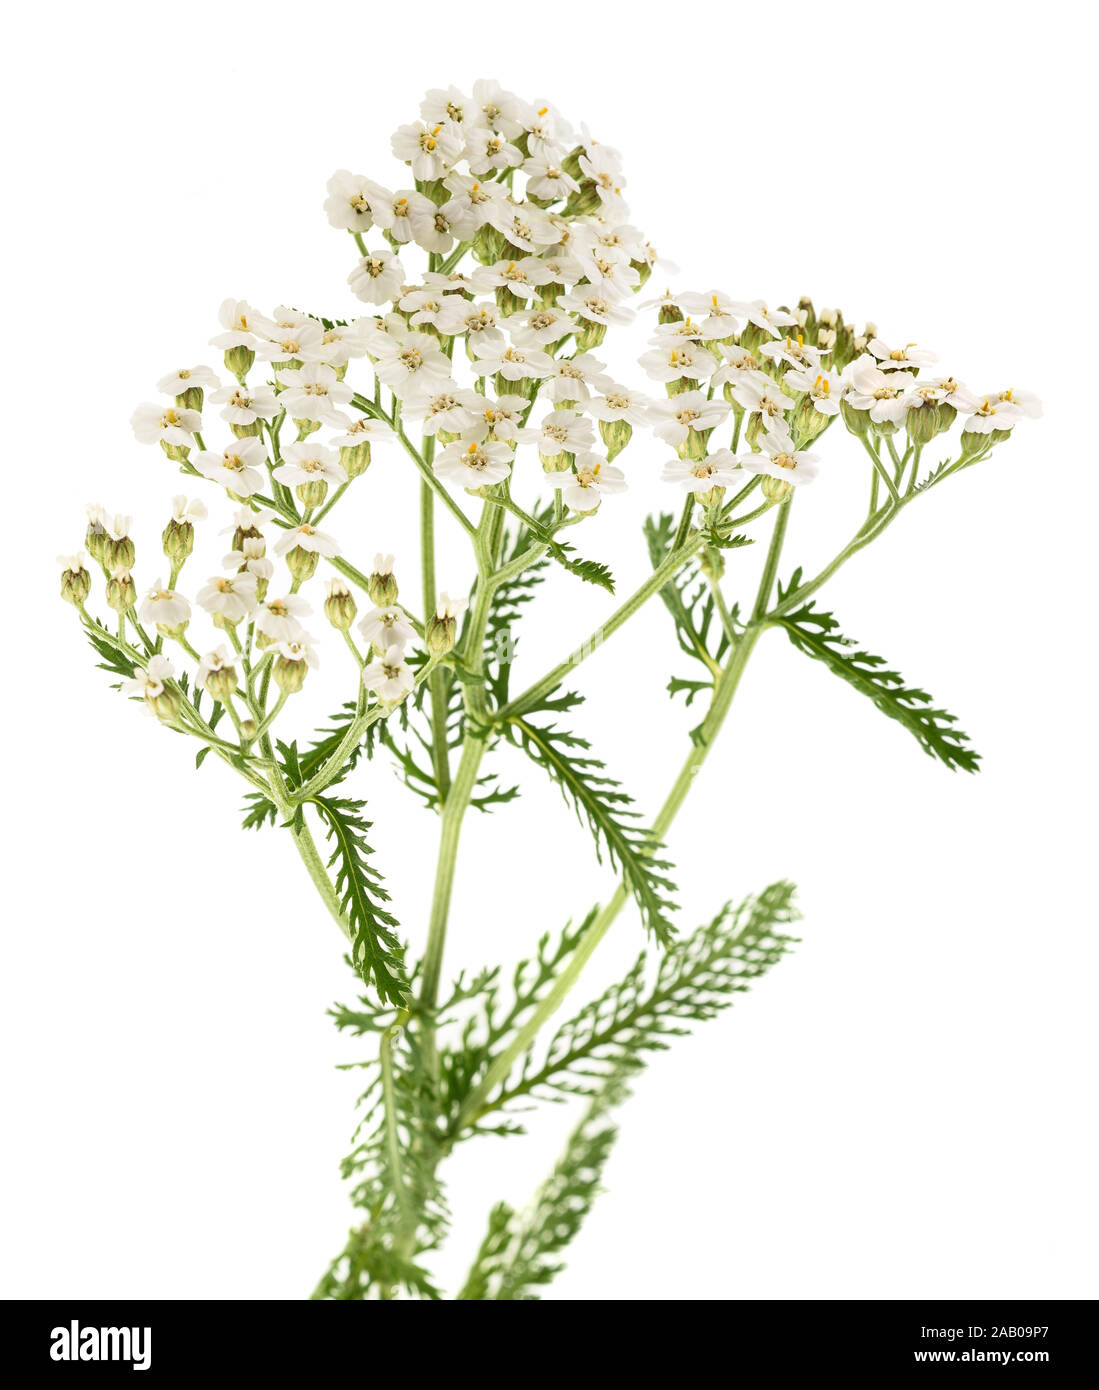 White yarrow flowers isolated on white background. Stock Photo